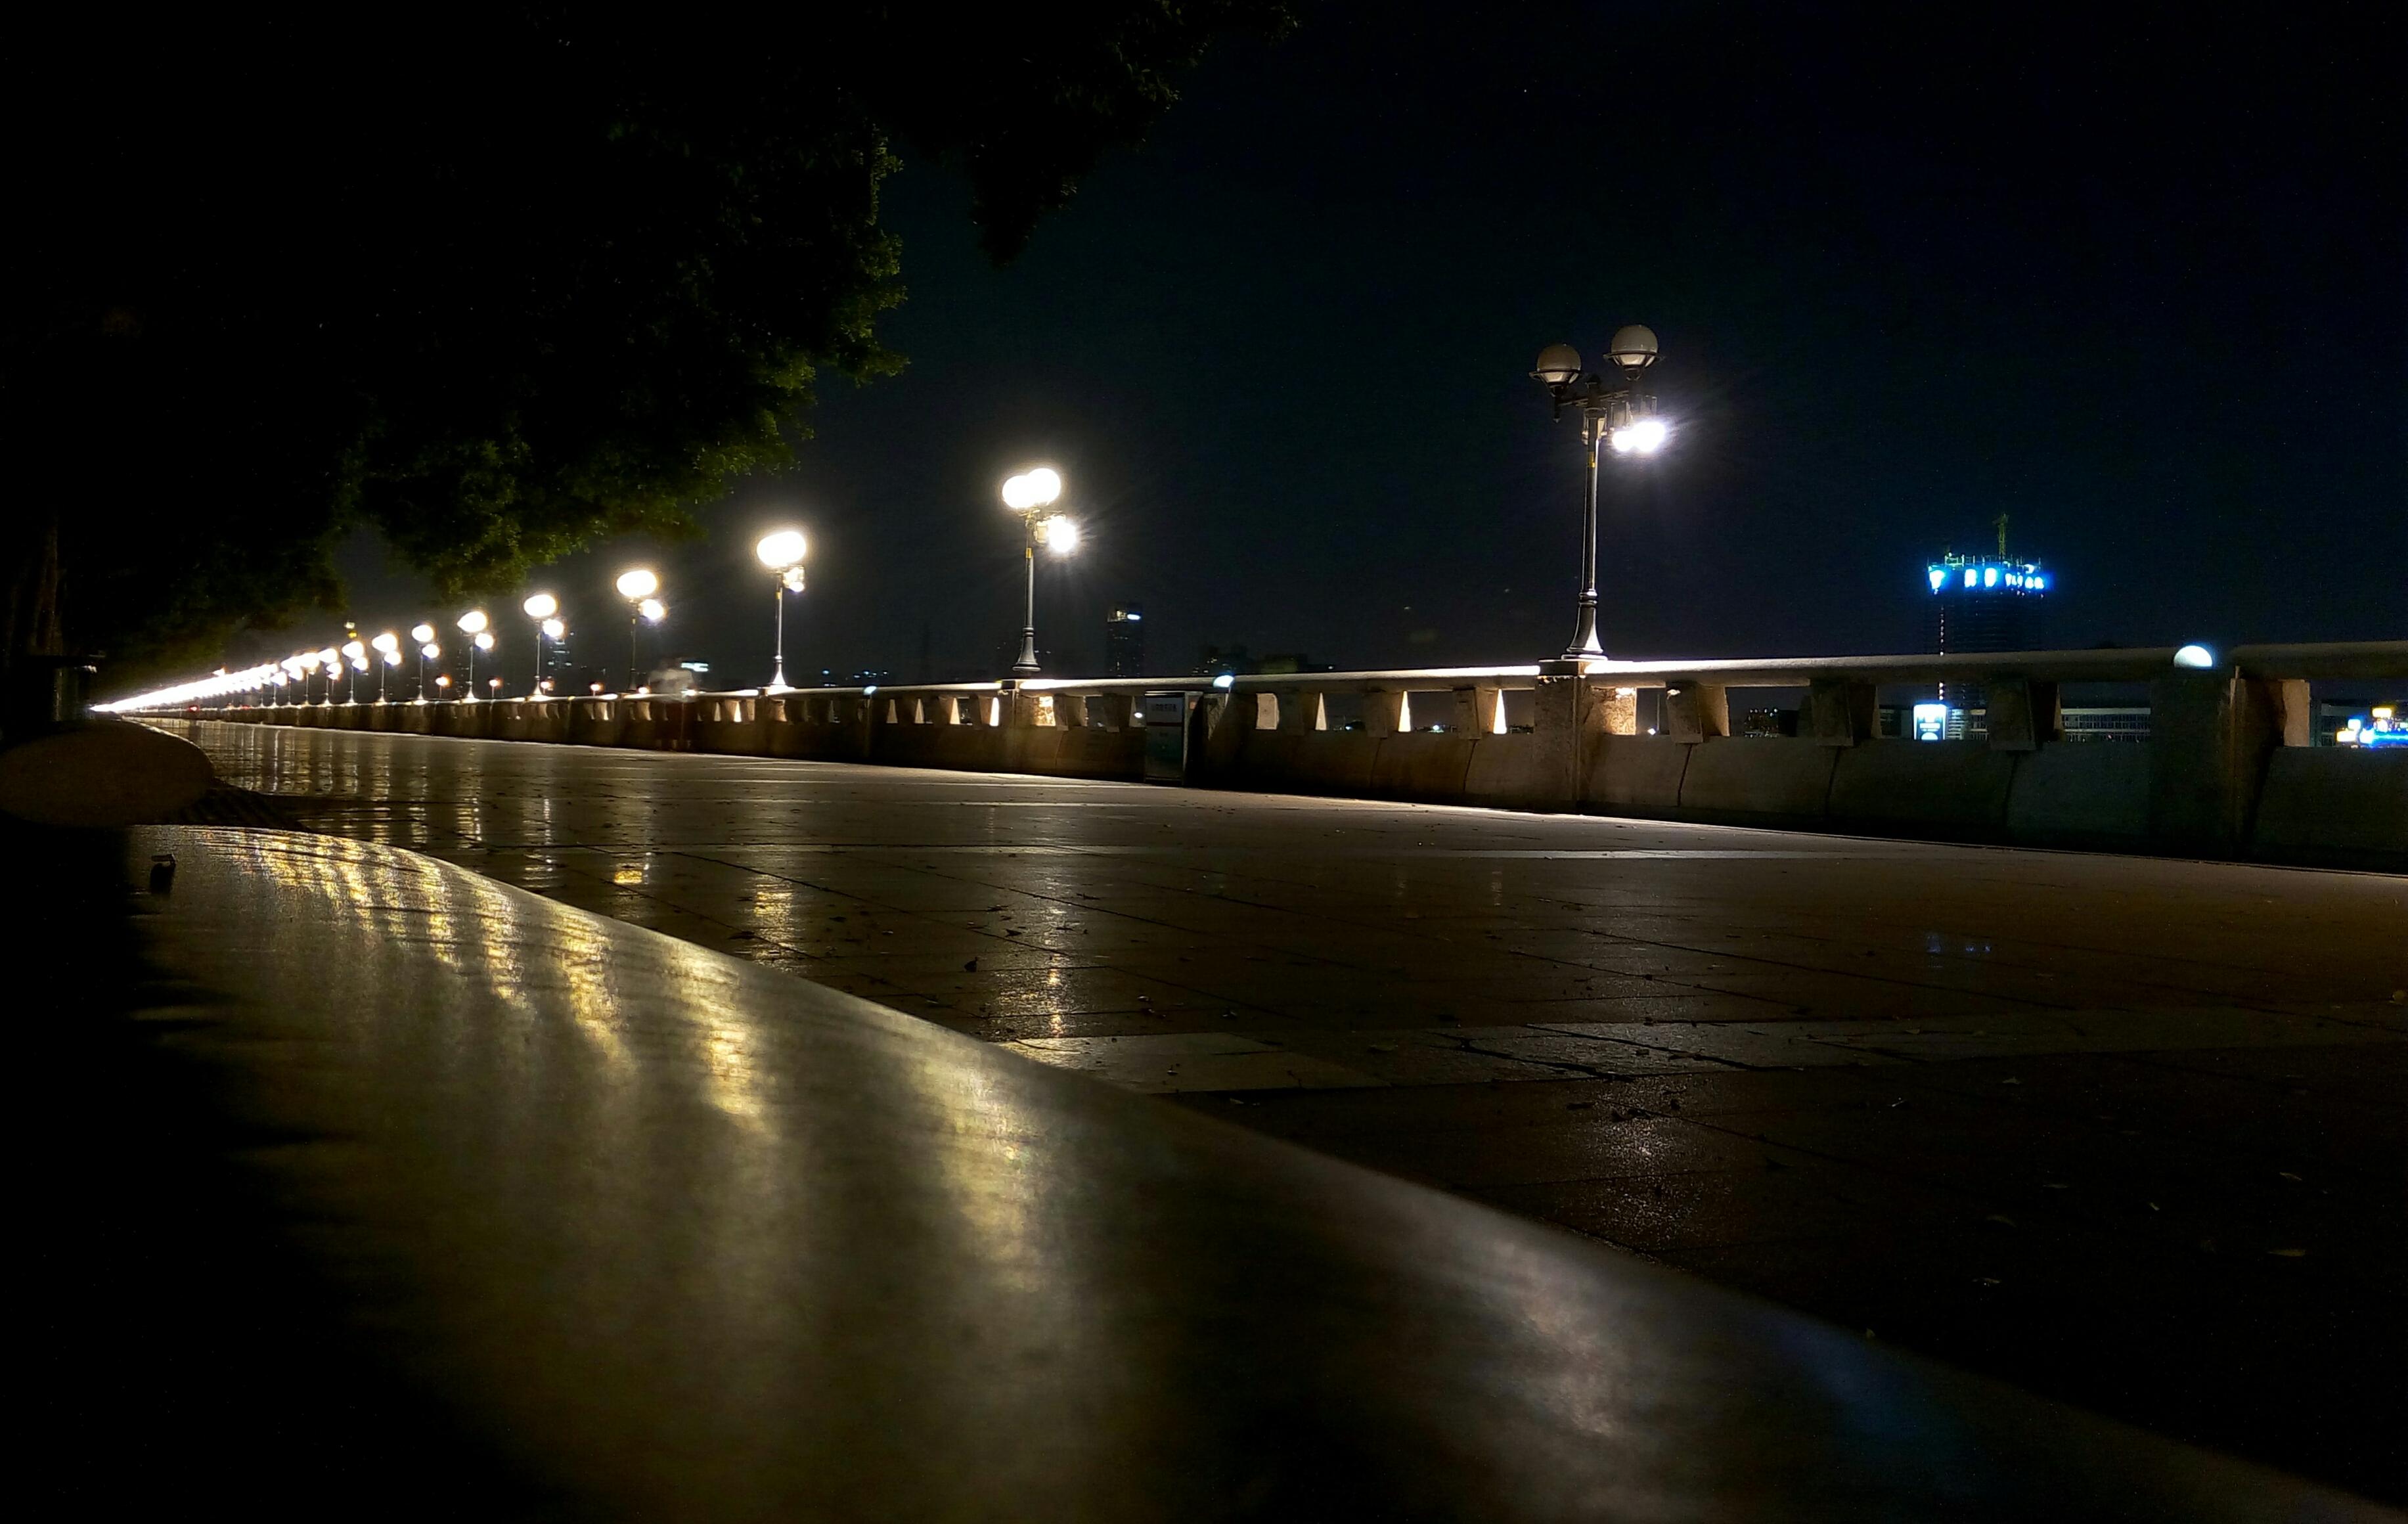 广州夜晚的照片街头图片